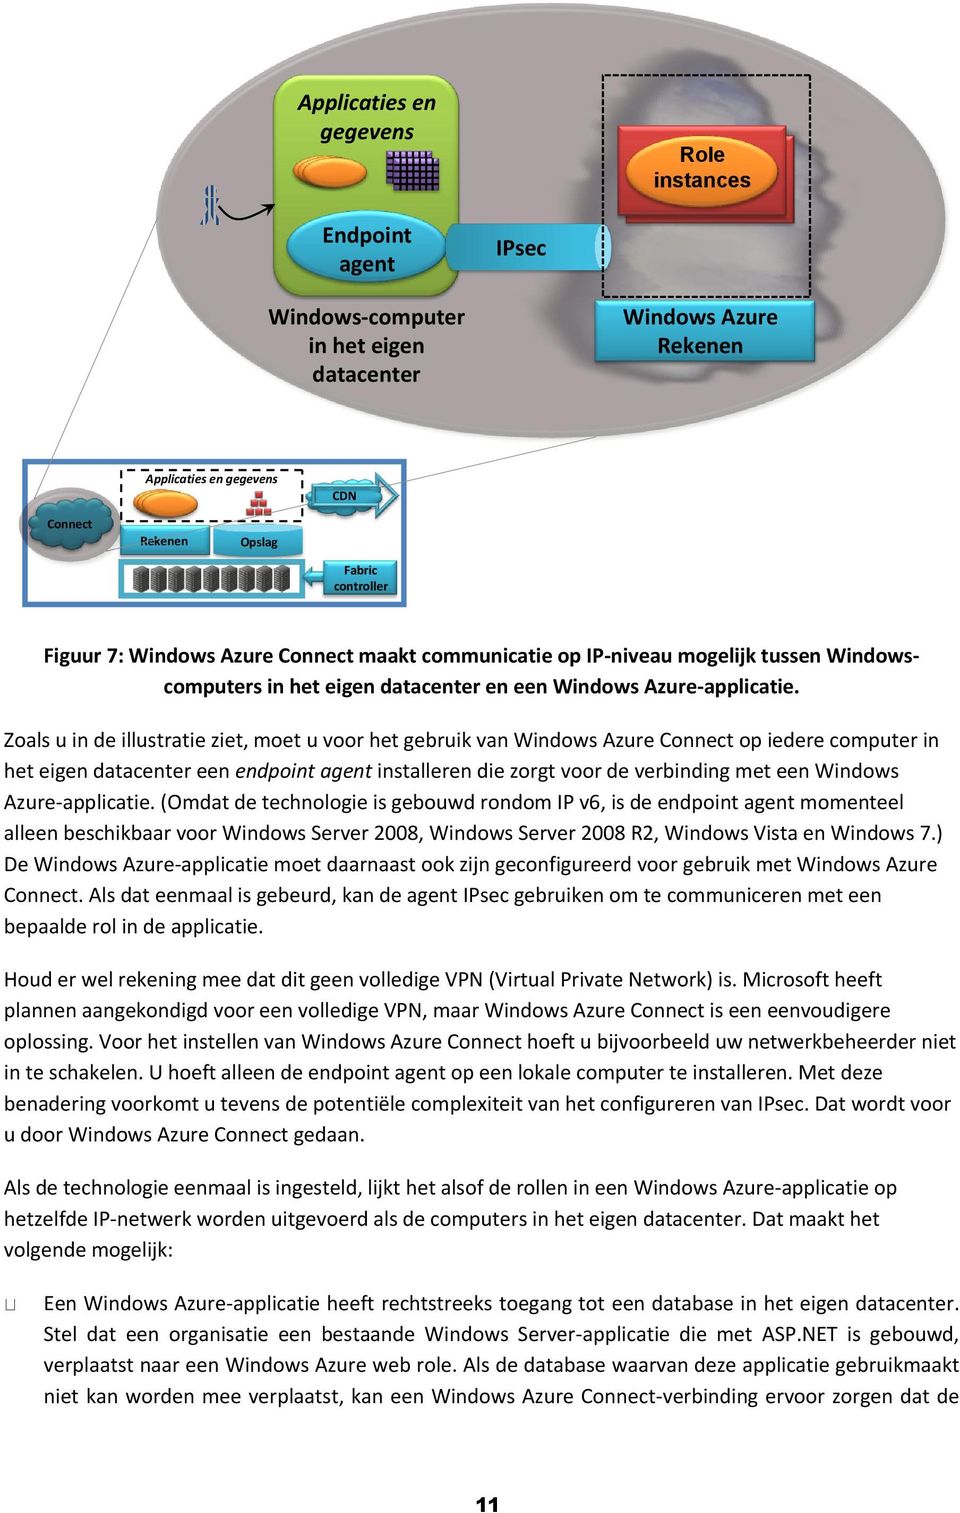 Zoals u in de illustratie ziet, moet u voor het gebruik van Windows Azure Connect op iedere computer in het eigen datacenter een endpoint agent installeren die zorgt voor de verbinding met een